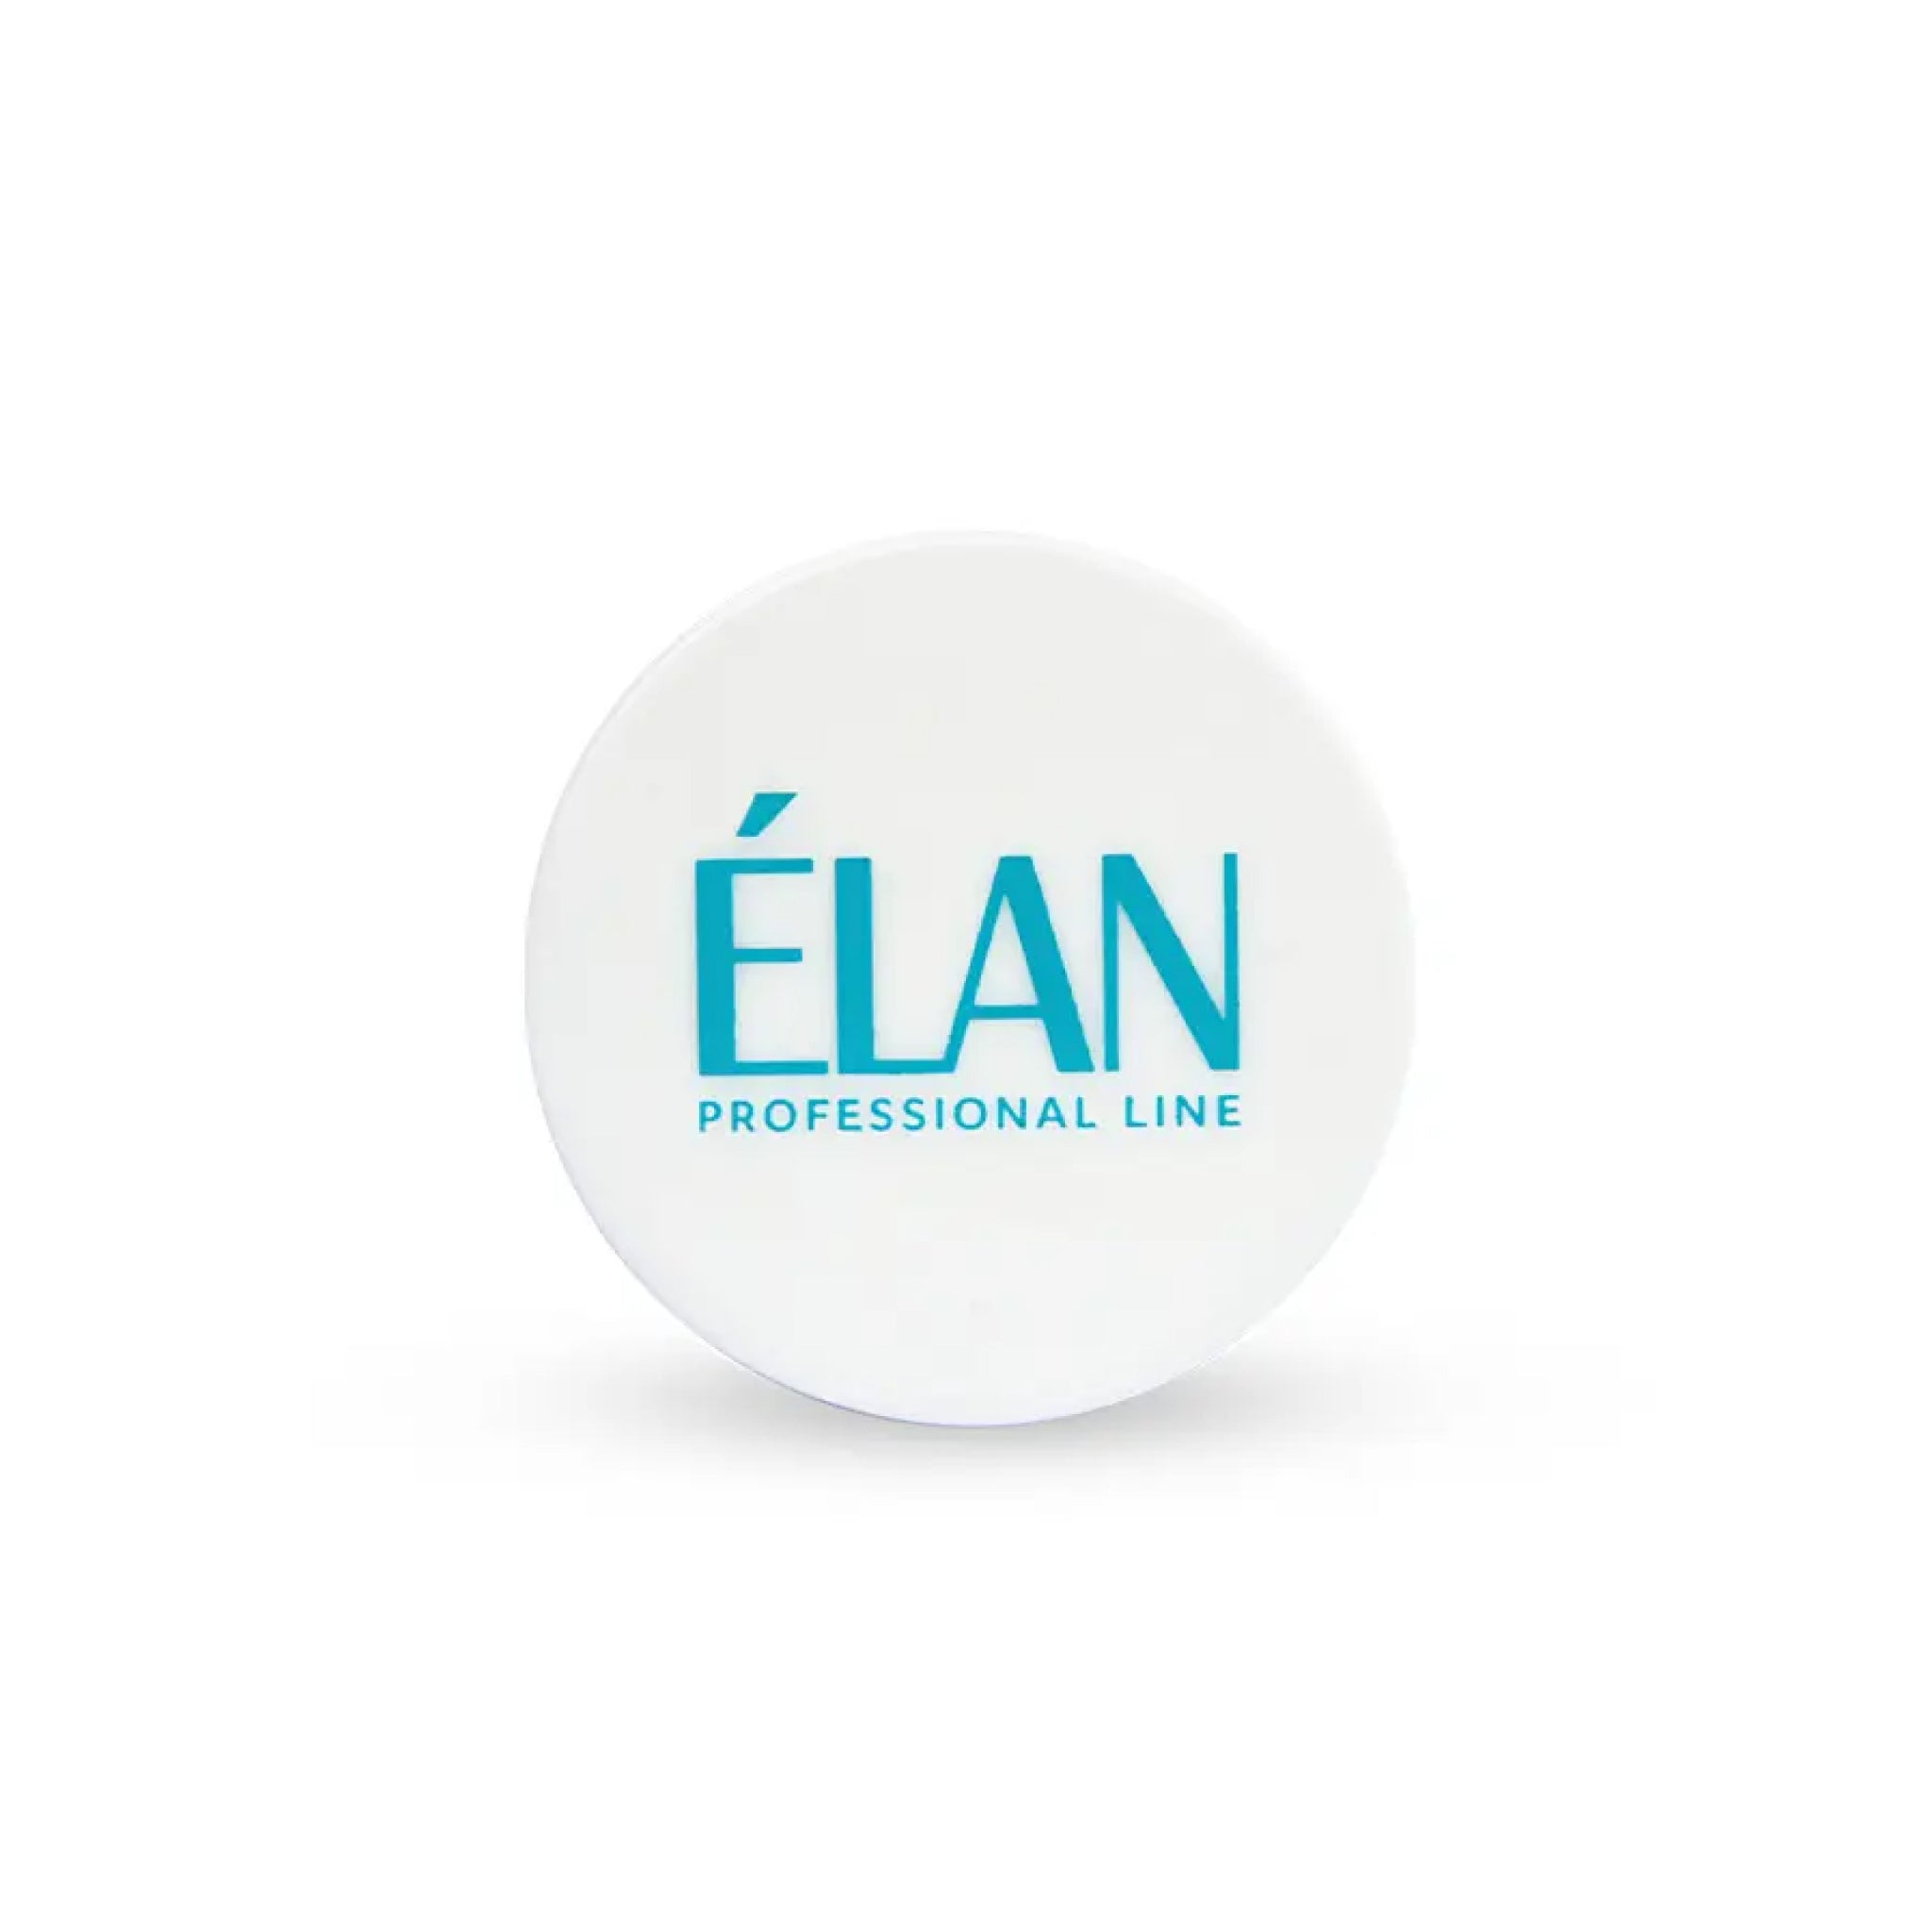 ELAN Argan Oil Skin Protector 2.0